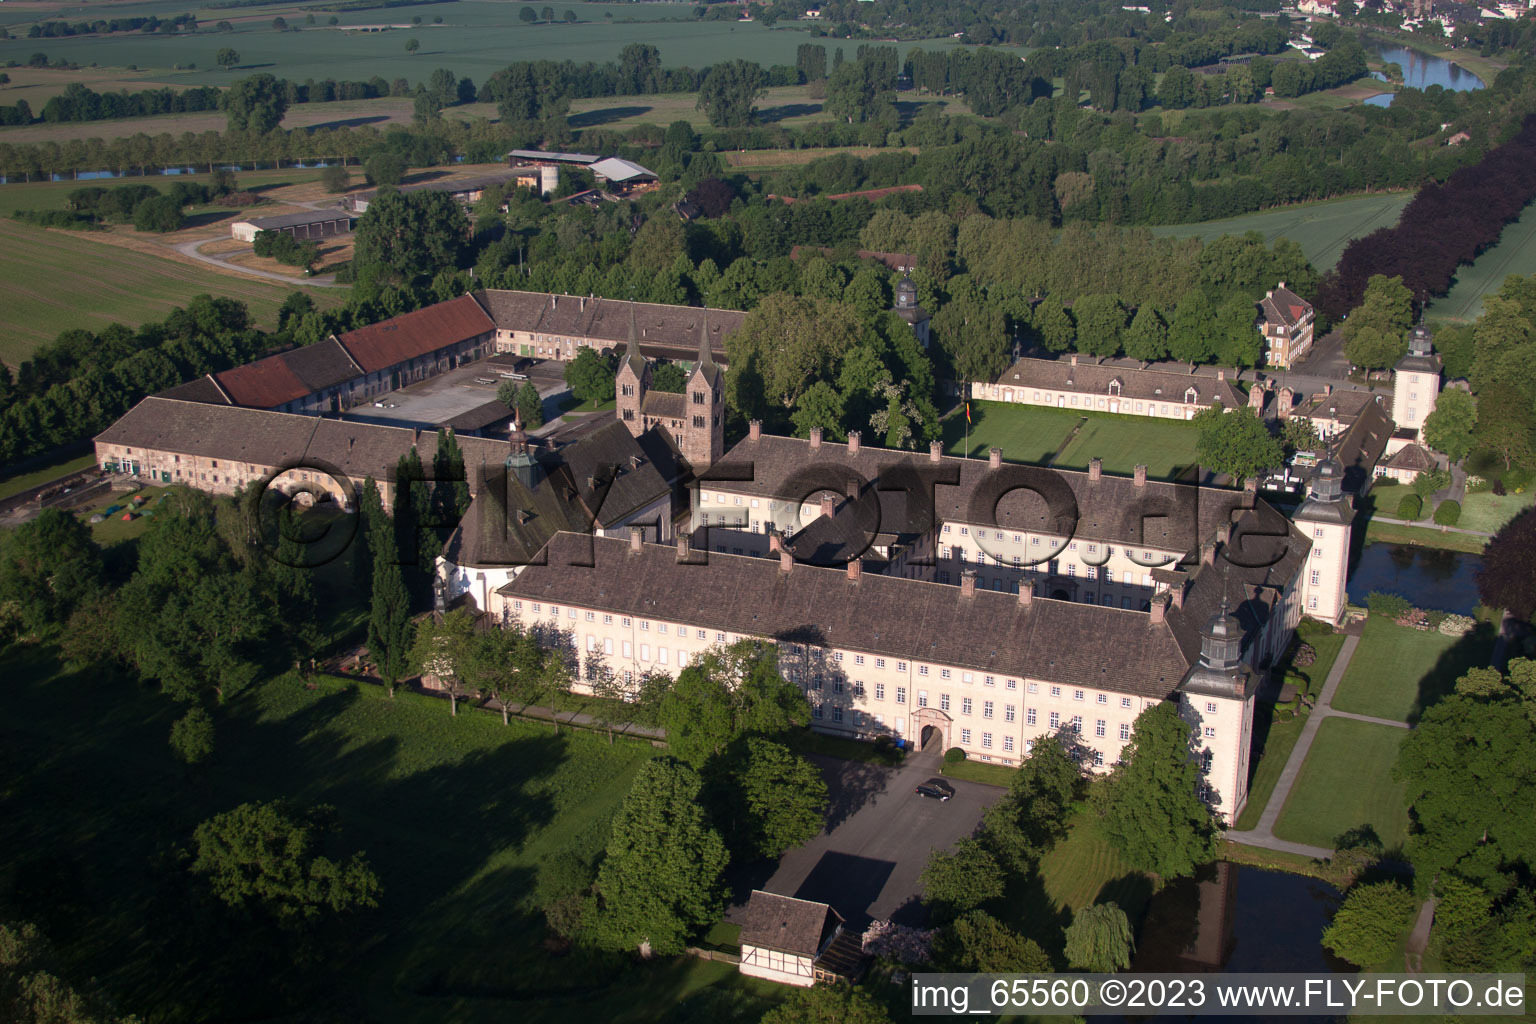 Château de Corvey à Höxter dans le département Rhénanie du Nord-Westphalie, Allemagne vue d'en haut